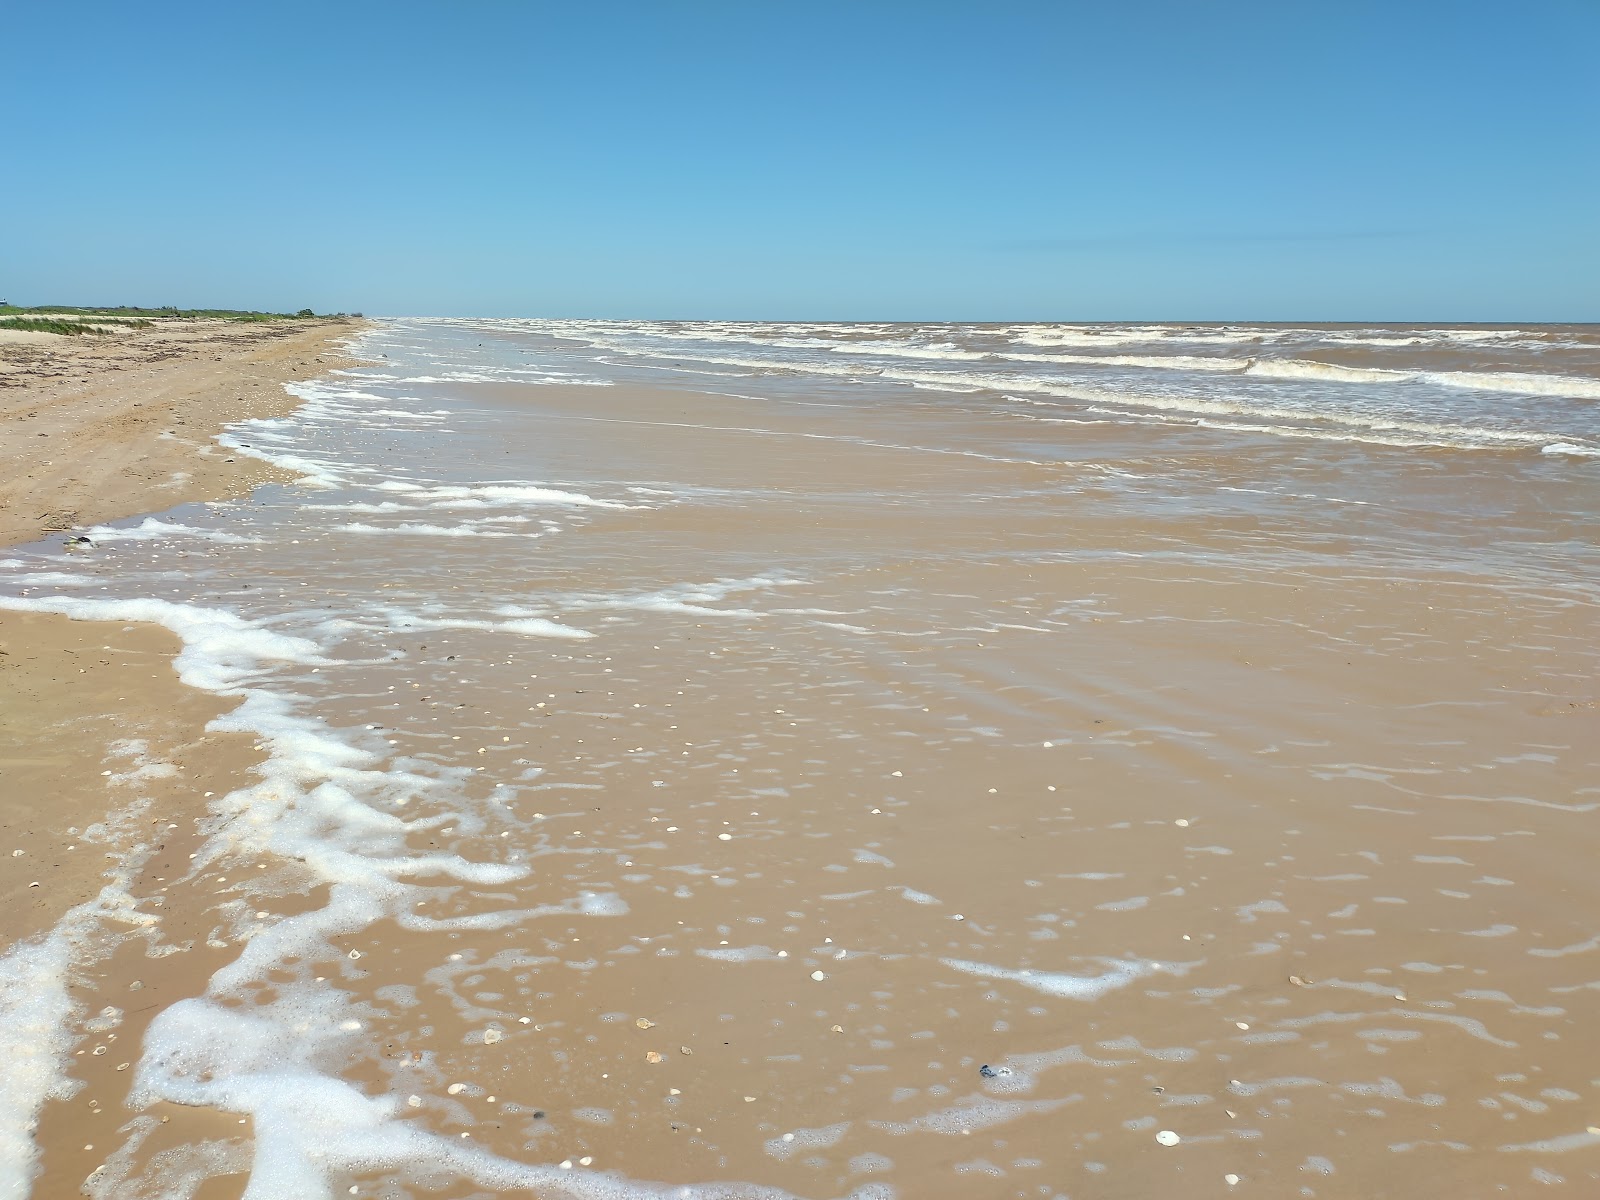 Zdjęcie Sargent beach z powierzchnią szary piasek